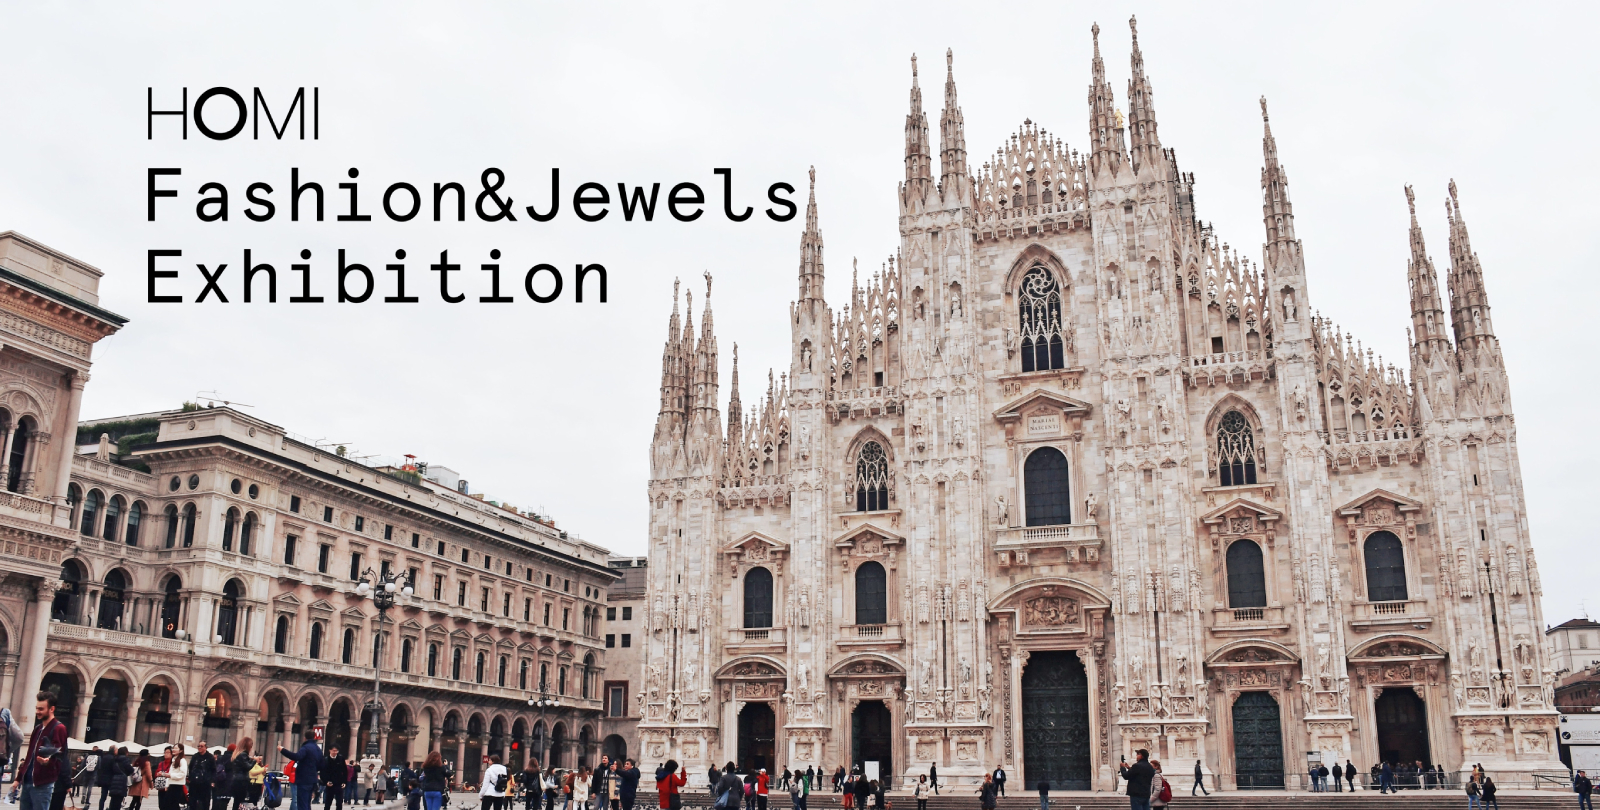 HOMI Fashion&Jewels Exhibition torna a scintillare con una nuova edizione